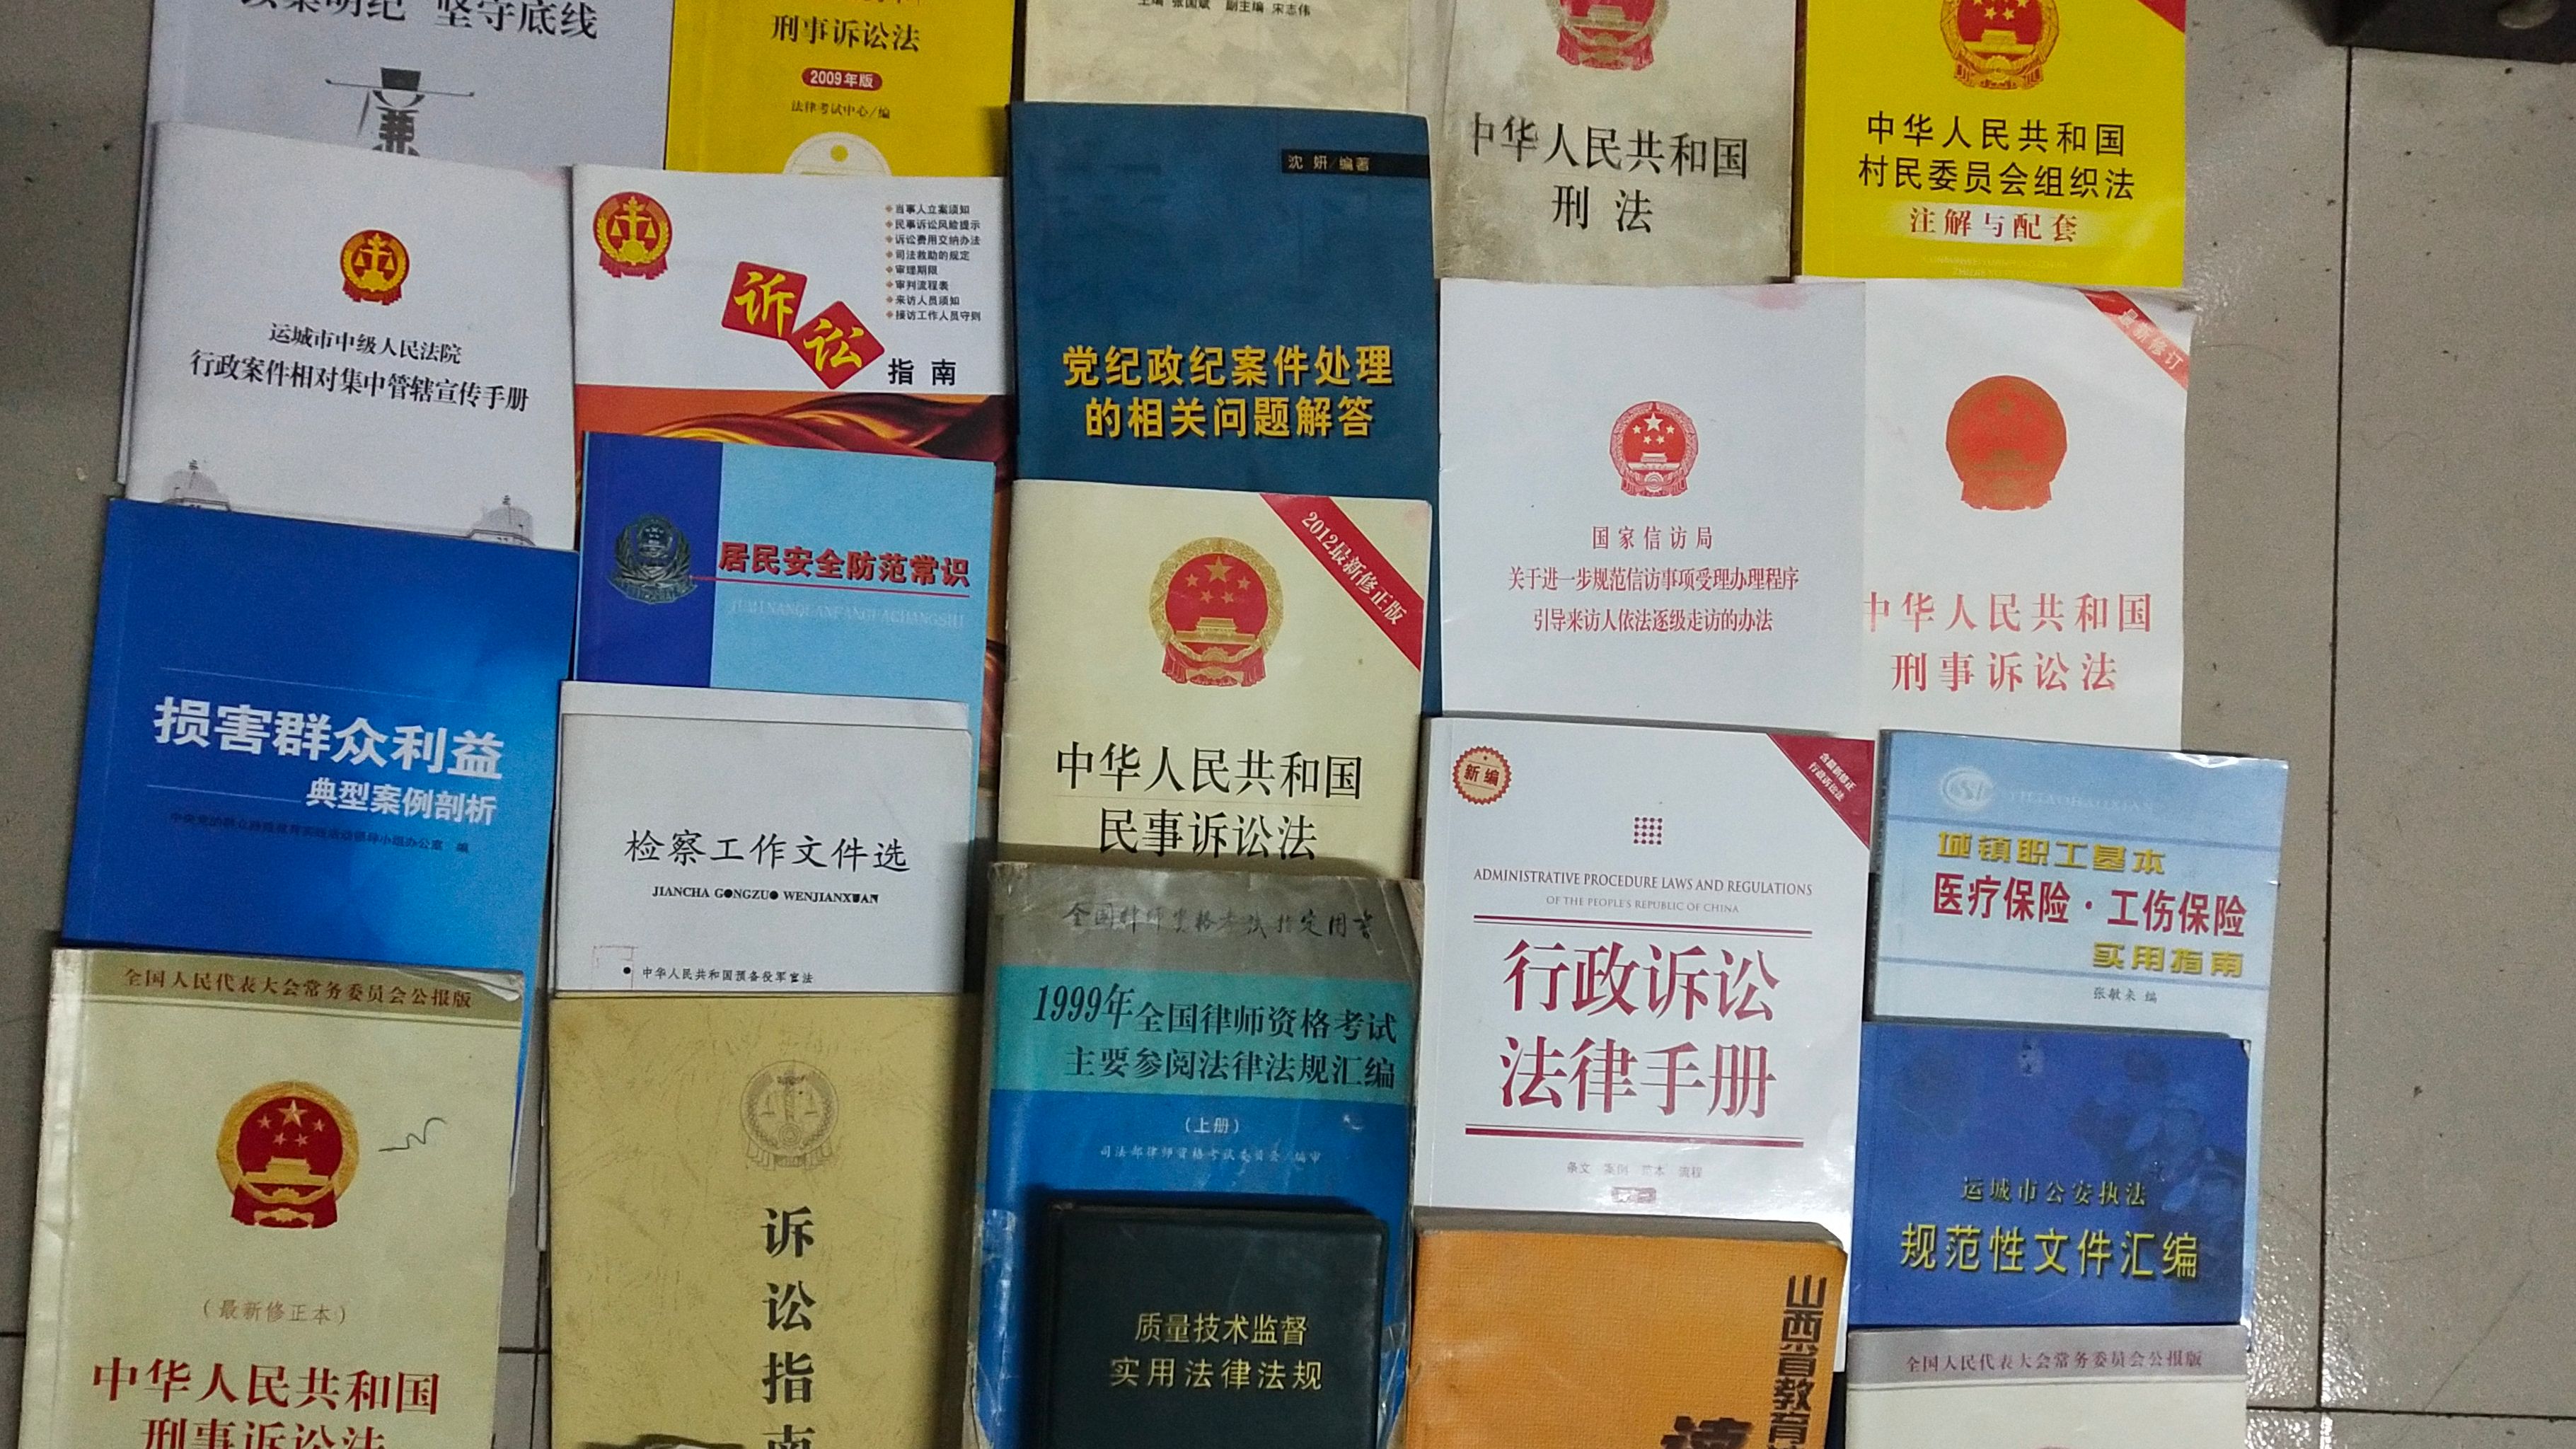 王淑珍的部分法律书籍。受访者供图